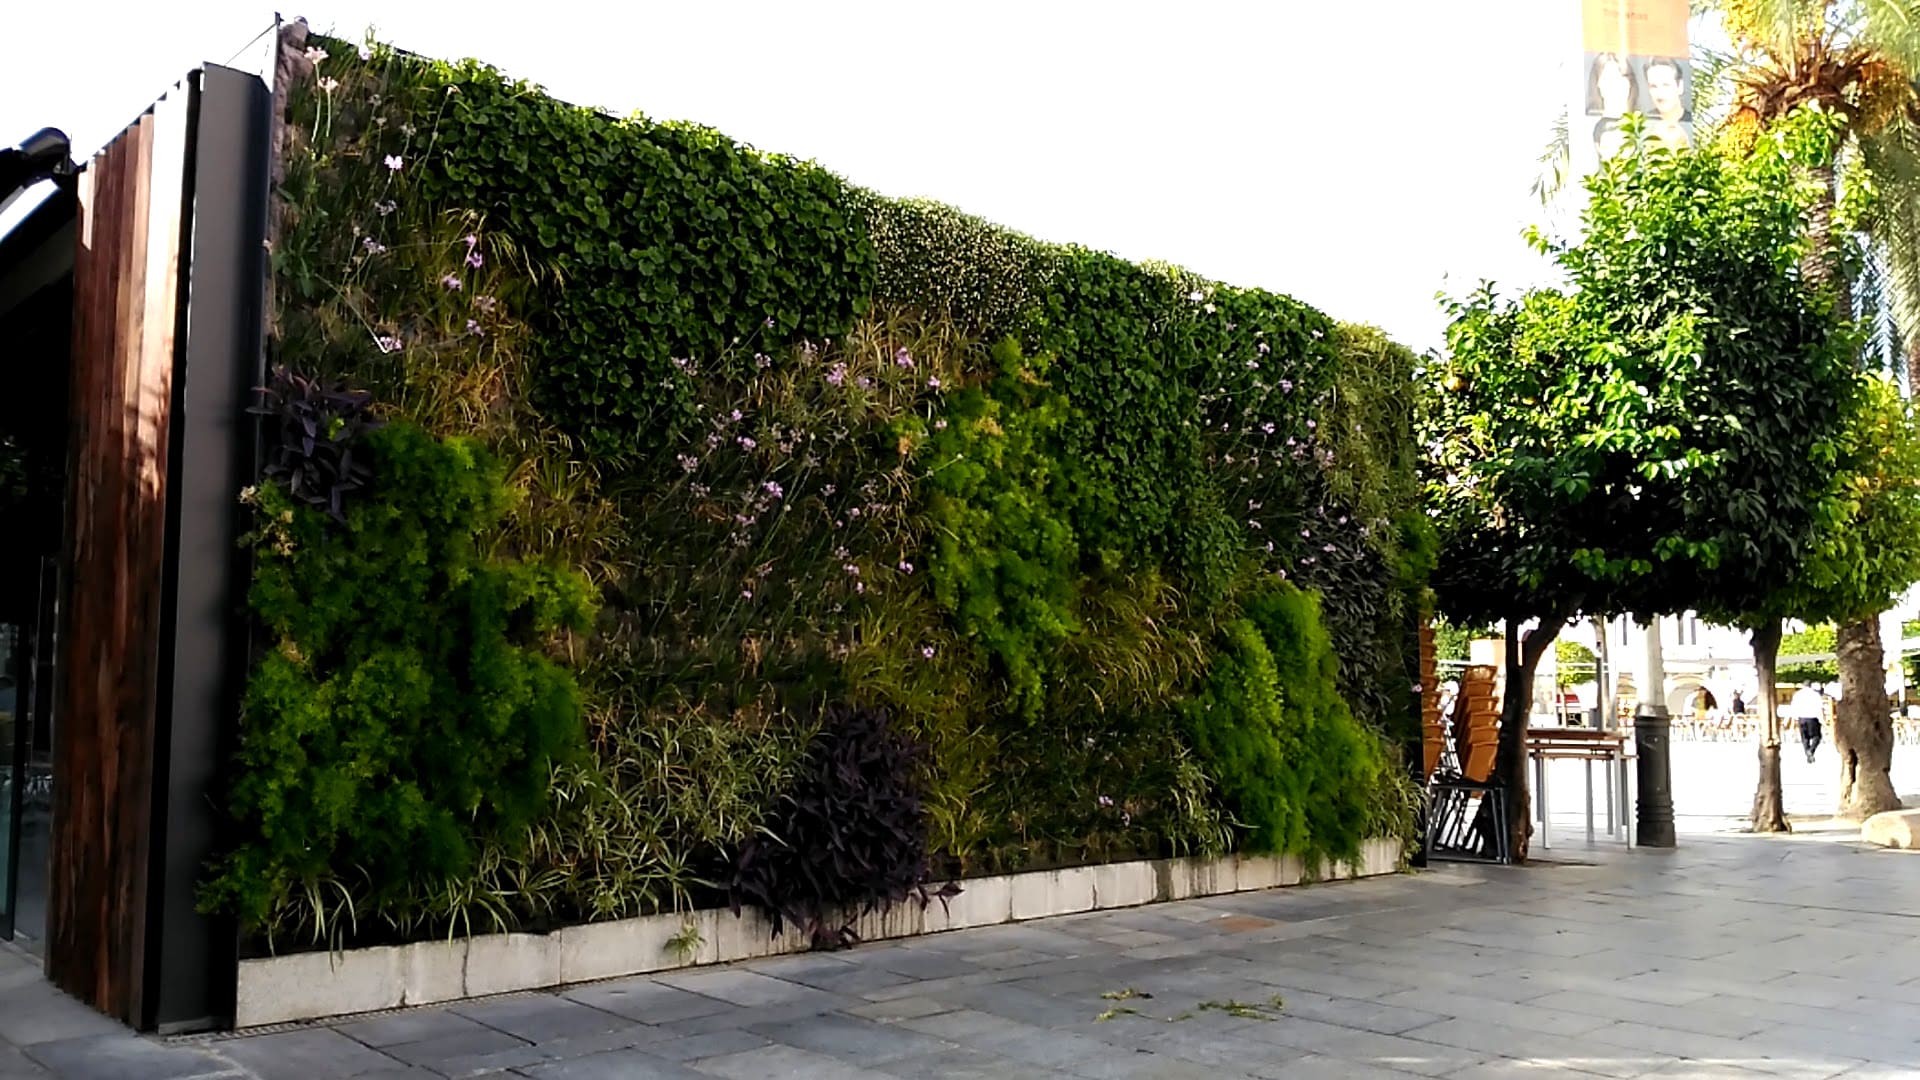 Jardines verticales en plaza España en Mérida